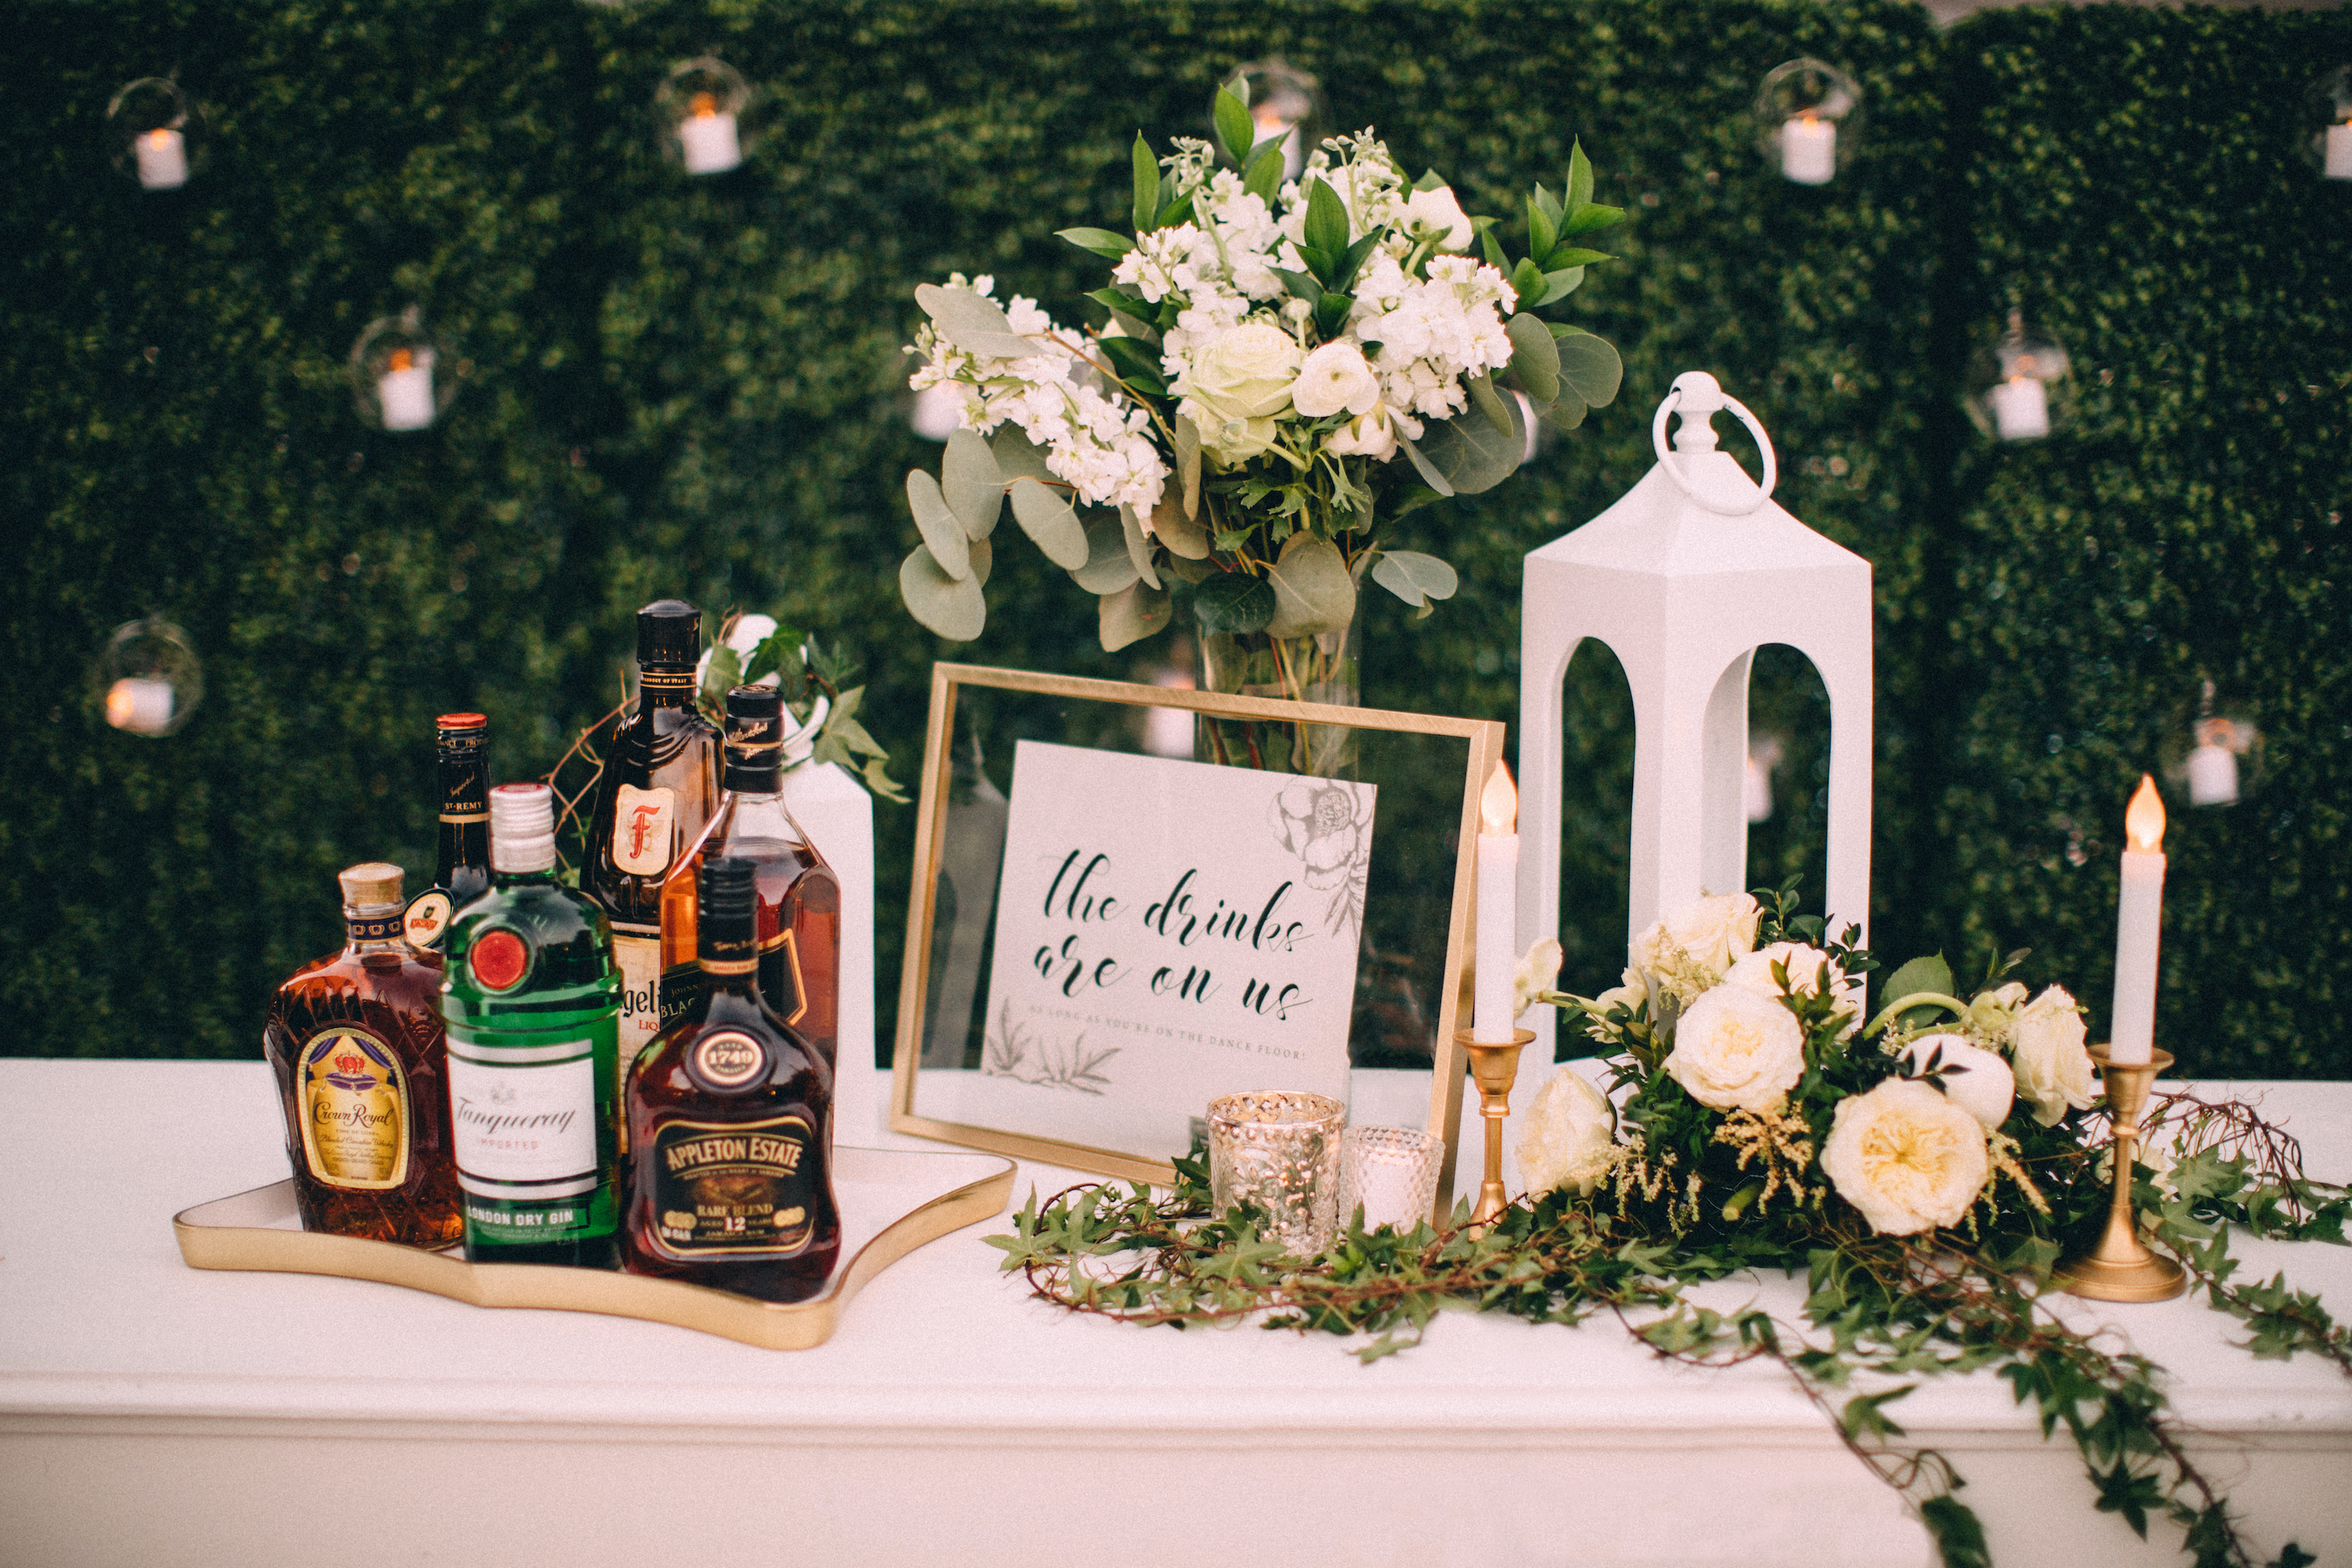 5 Fun Wedding Reception Ideas